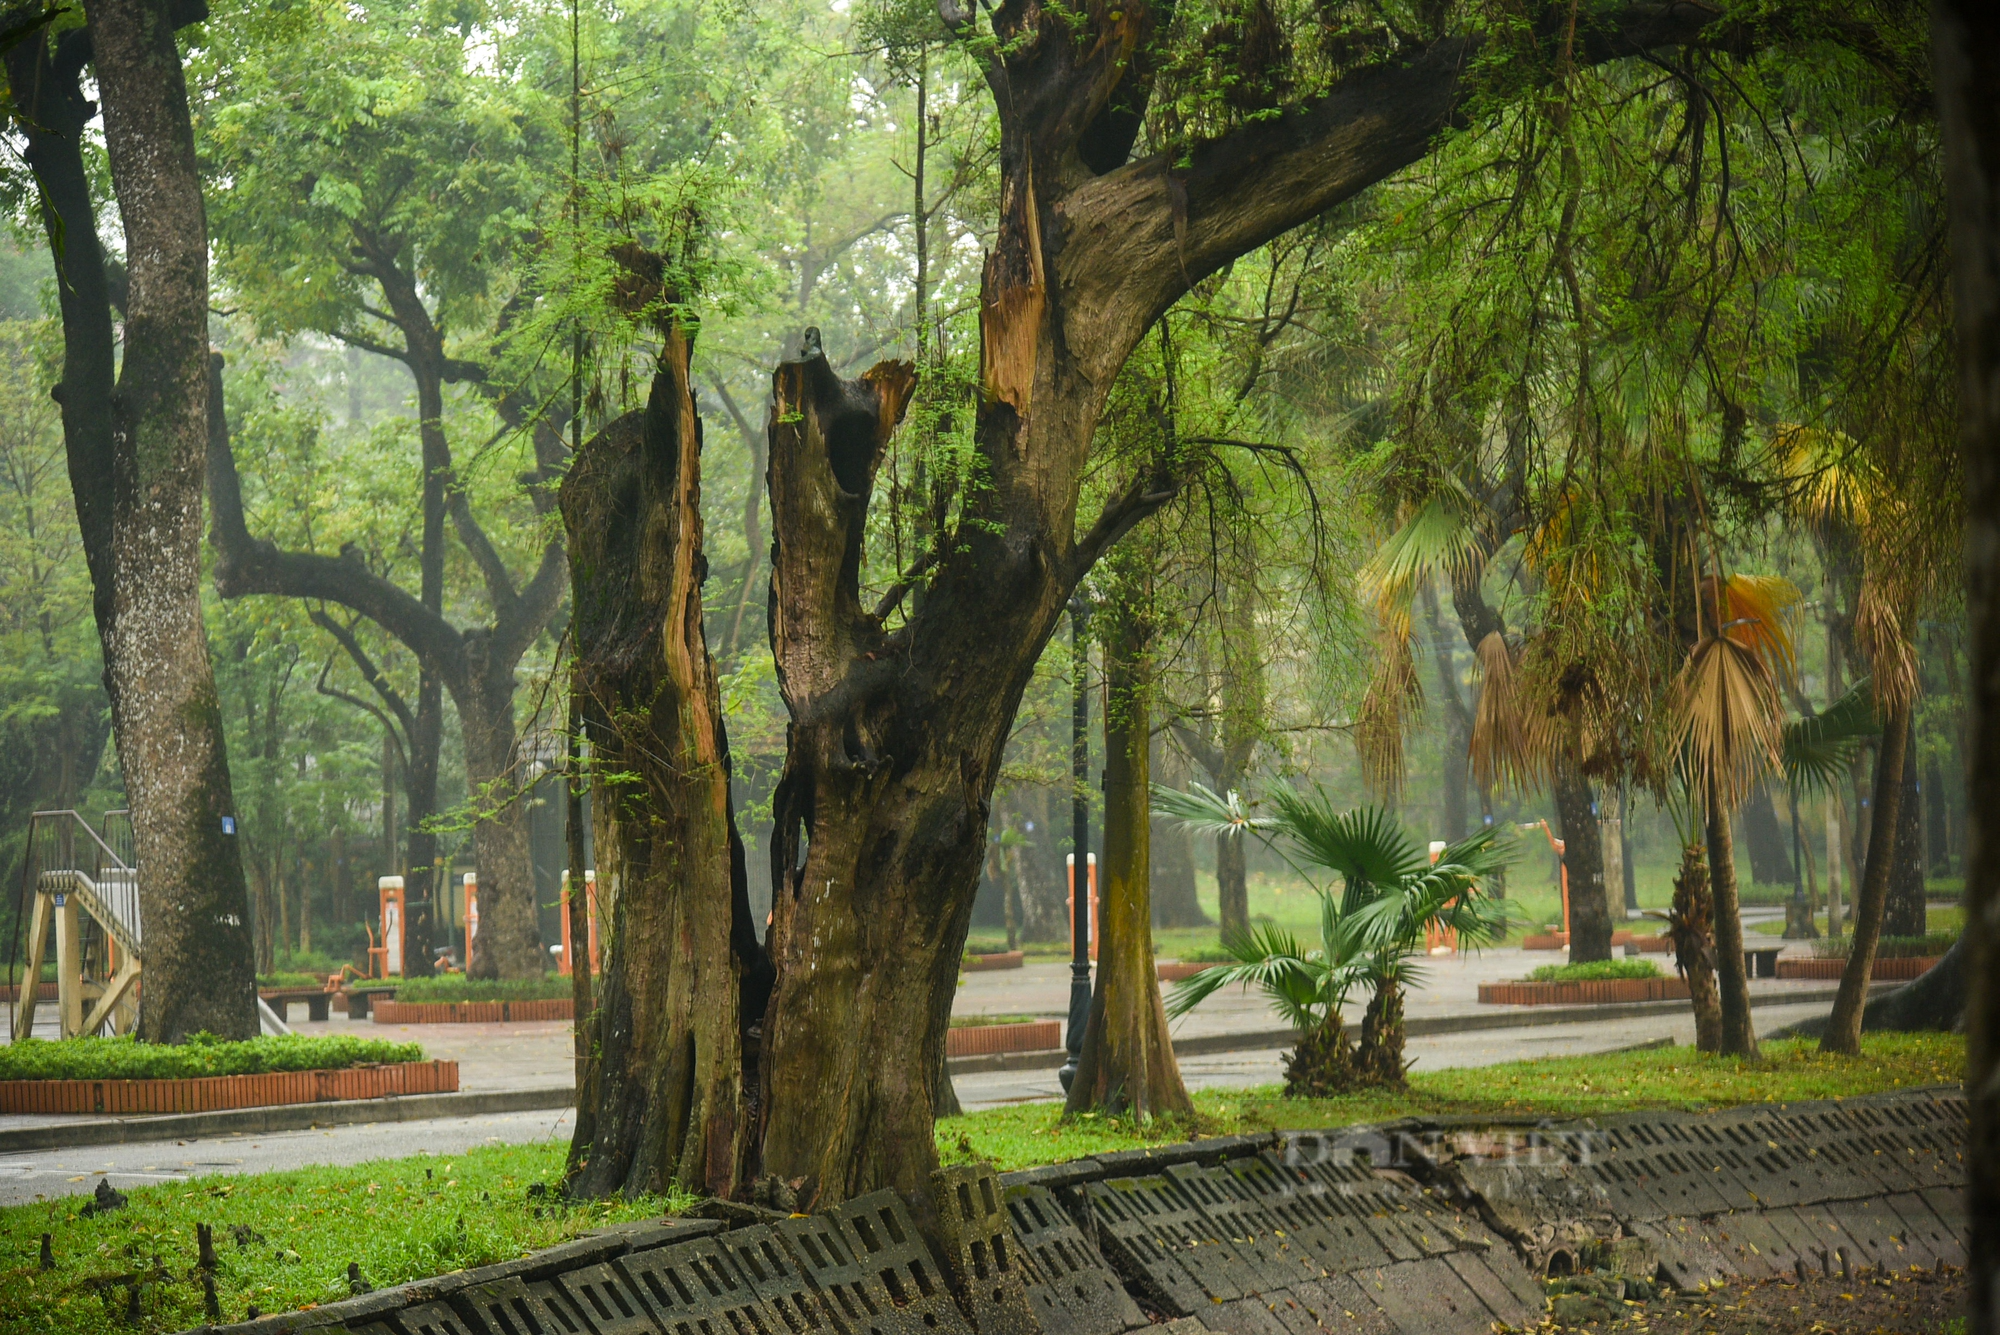 Nhiều cây cổ thụ hơn 100 tuổi chết khô ở công viên Bách Thảo Hà Nội - Ảnh 8.